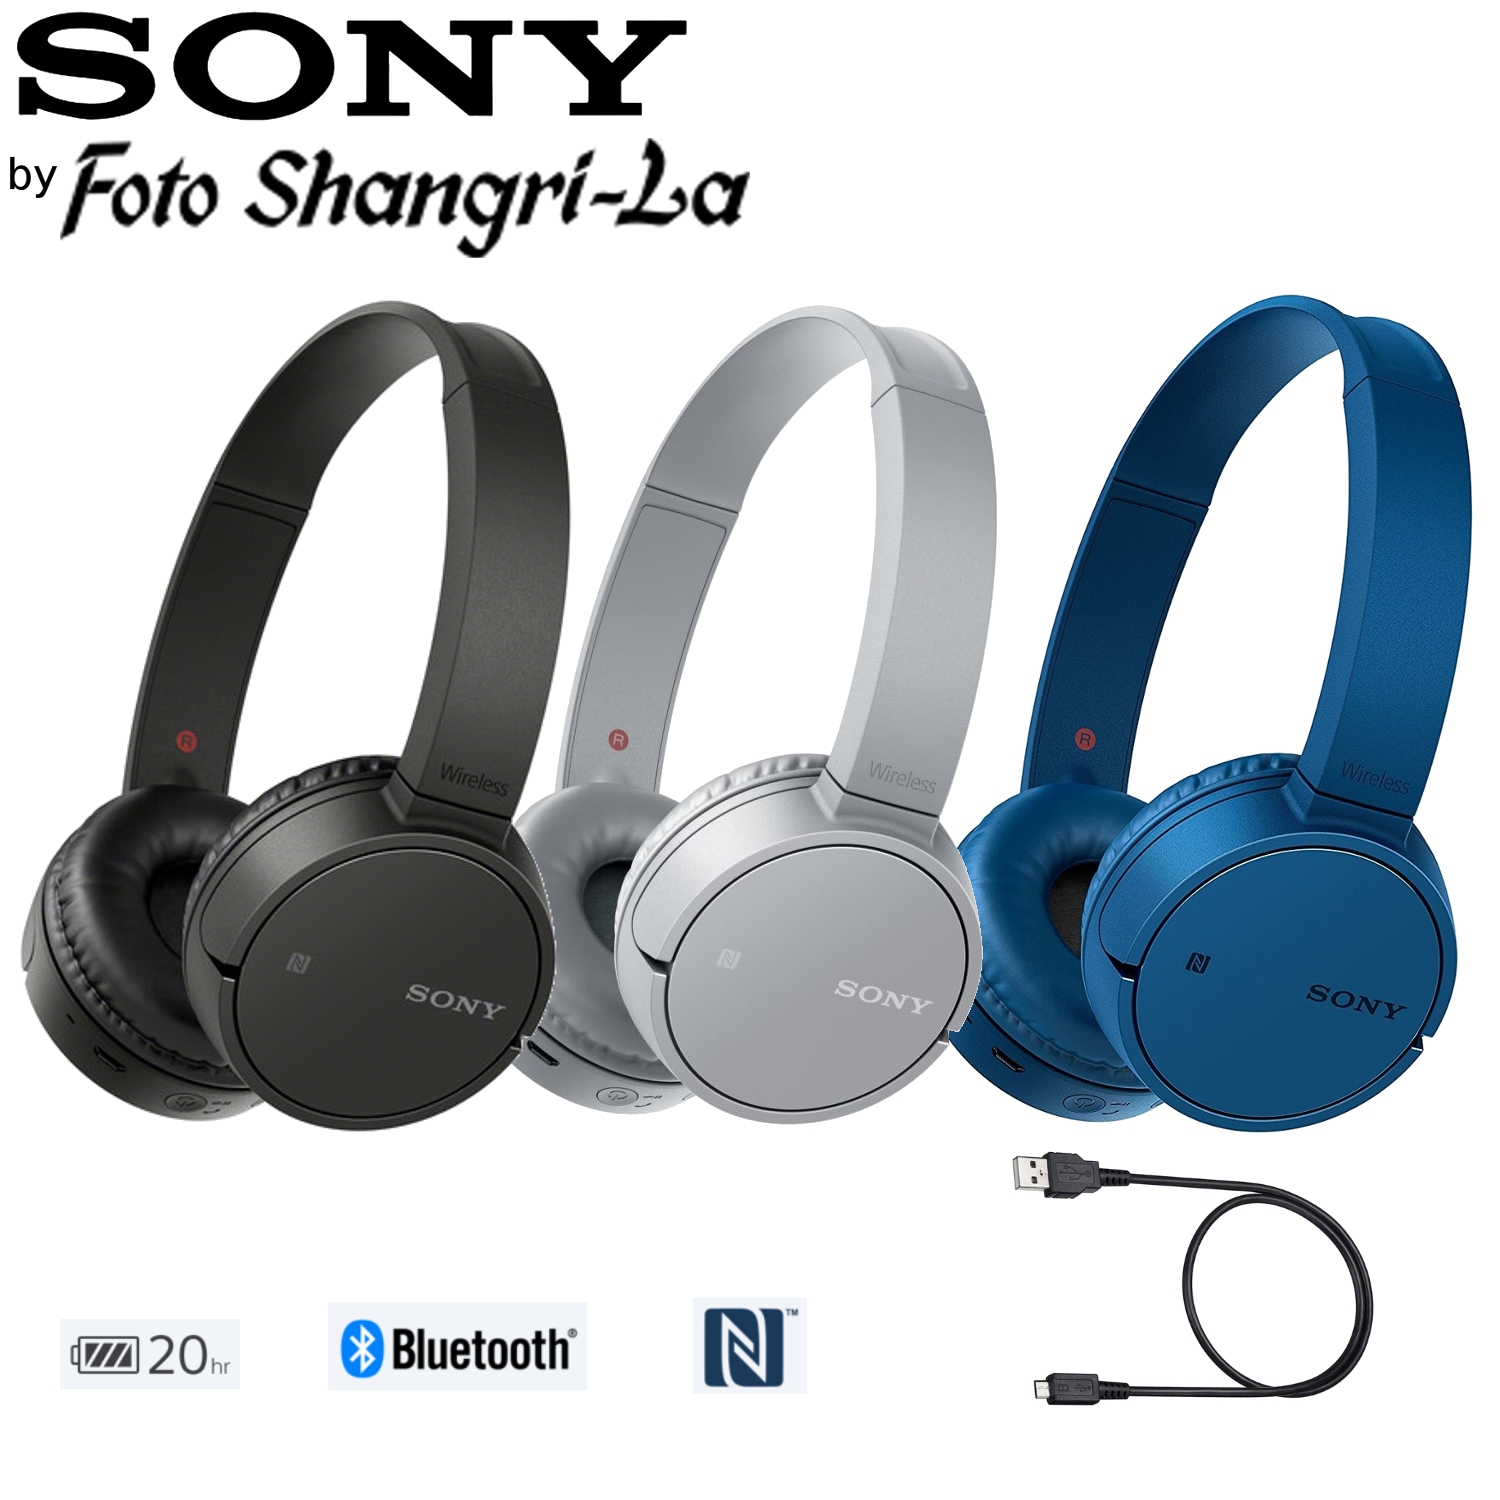 Tai nghe không dây Sony WH-CH500 cung cấp chất lượng âm thanh mạnh mẽ, sống động